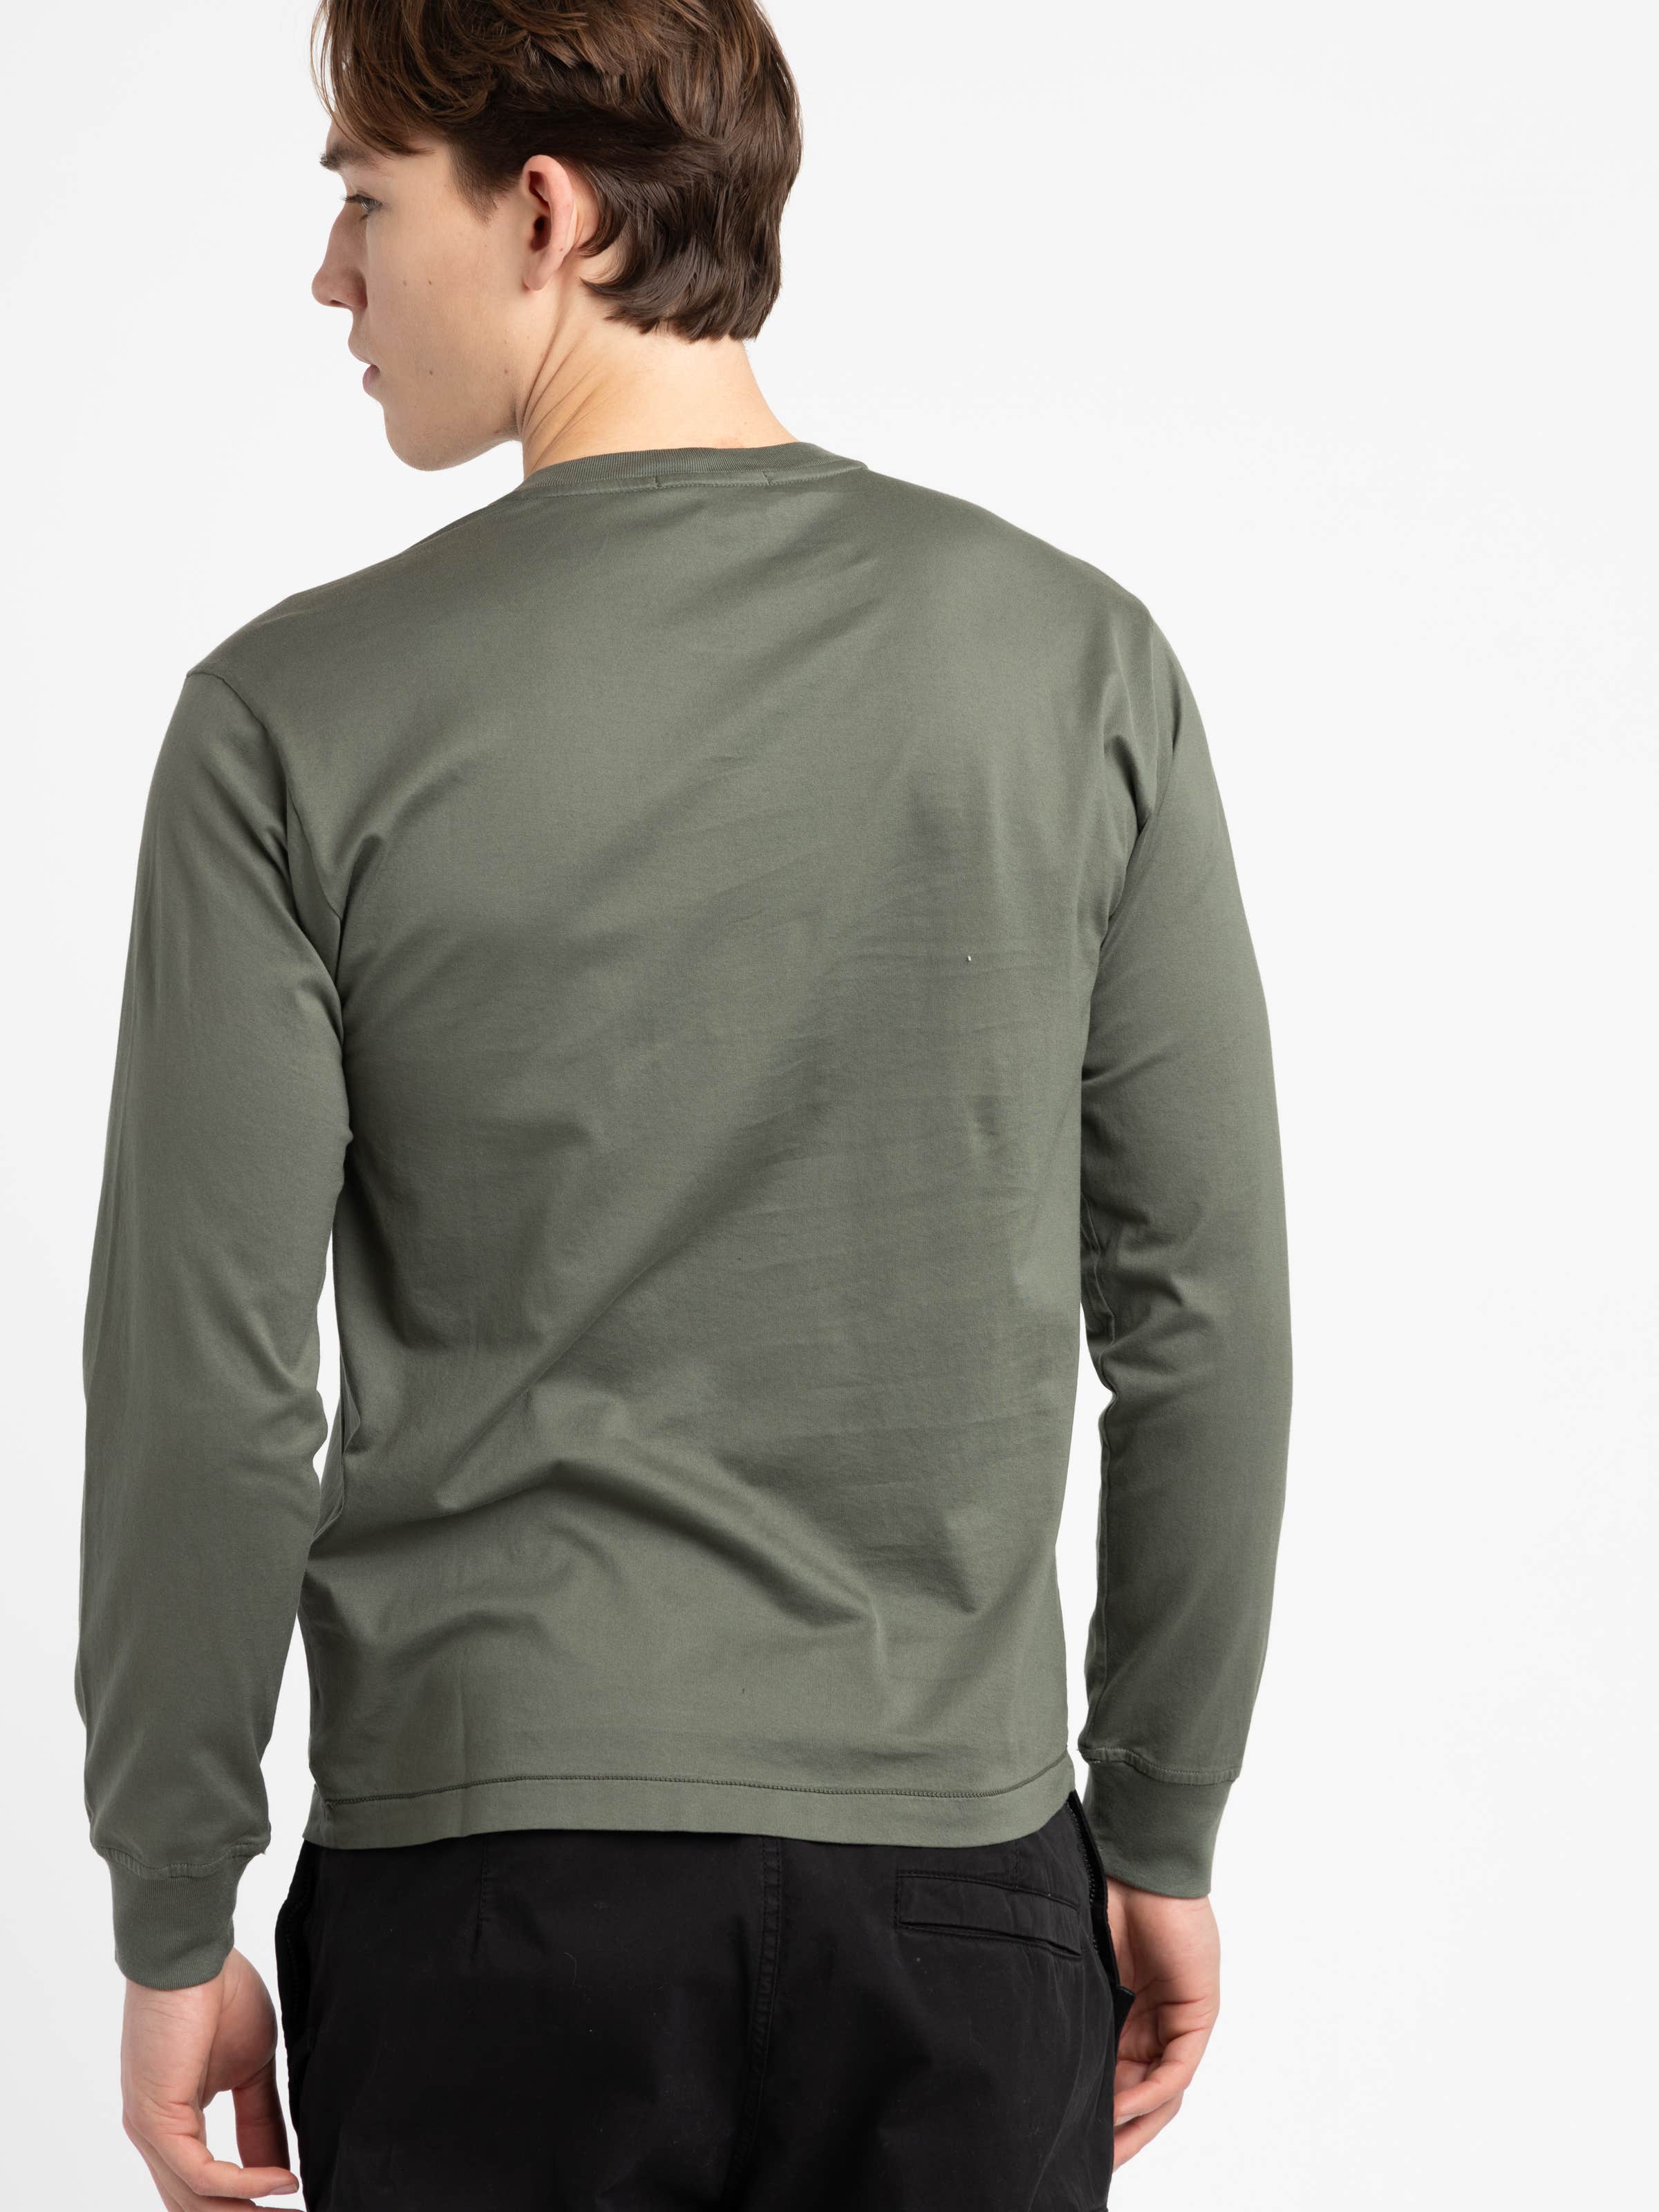 Green Long-Sleeve Cotton Shirt